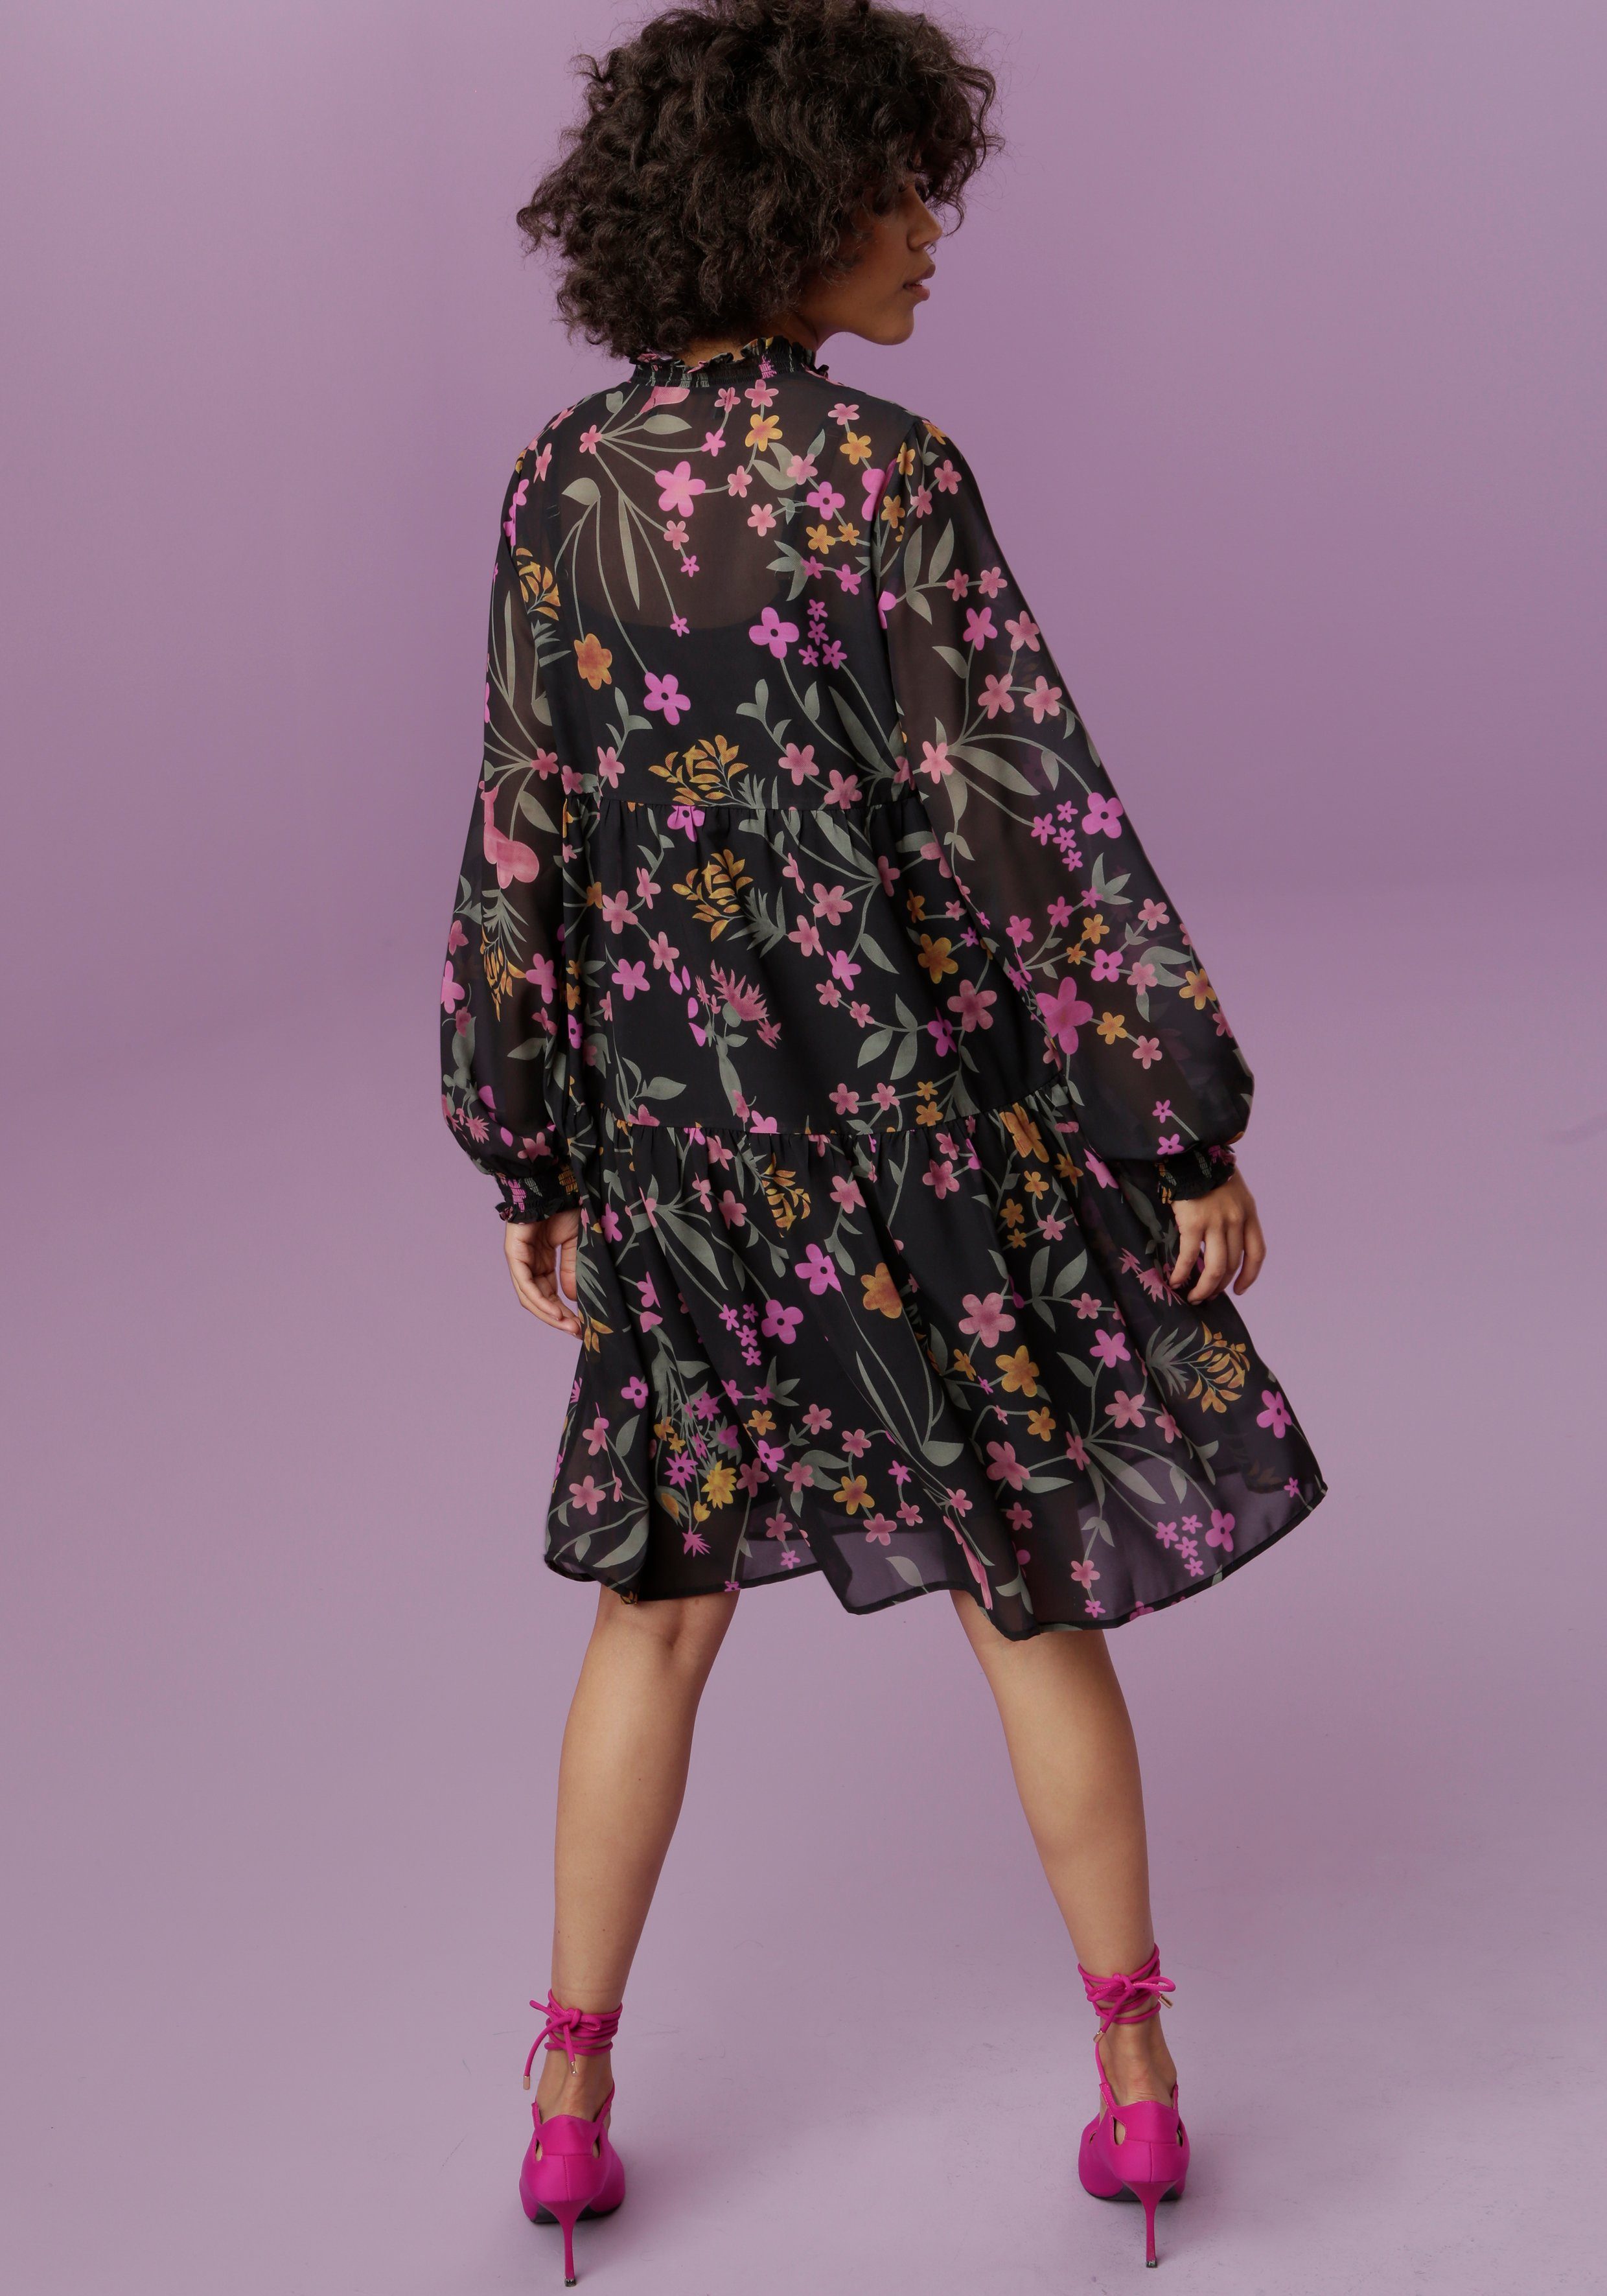 CASUAL farbenfrohem Blumenstruck Blusenkleid mit Aniston